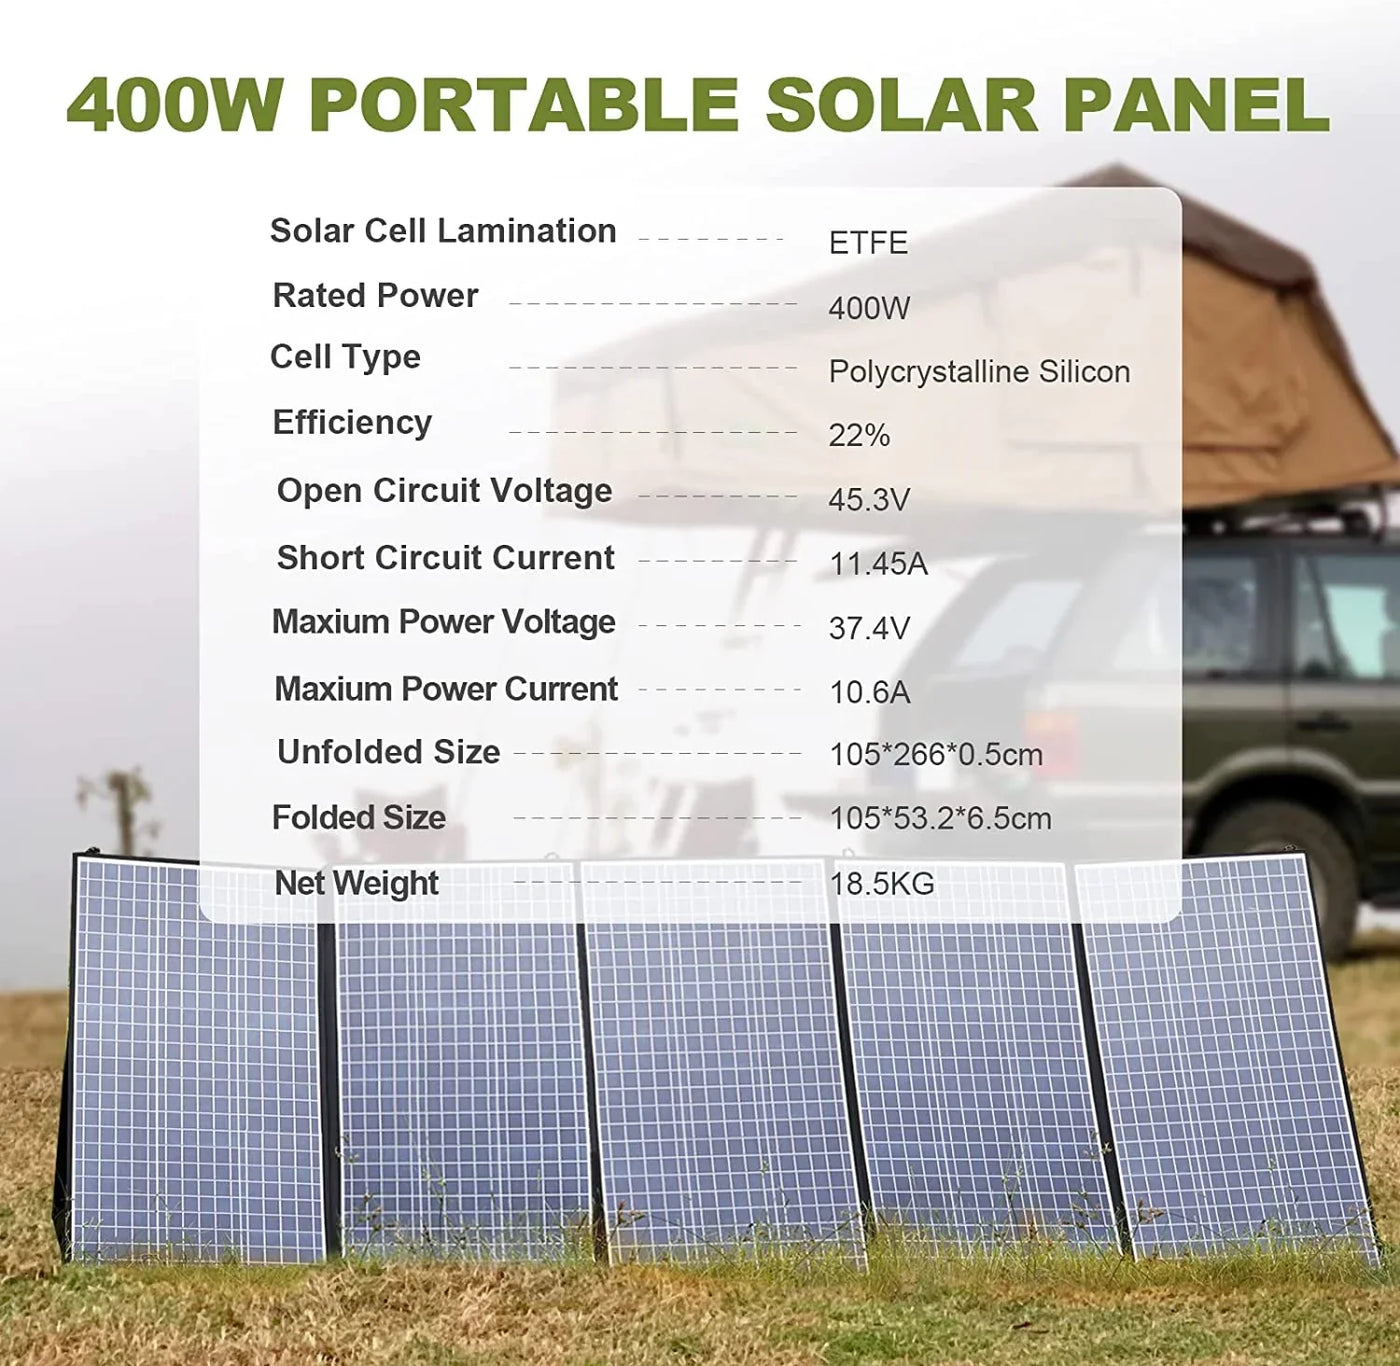 ALLPOWERS Kit Generatore Solare 3500W (R3500 + SP037 400W Pannello Solare)